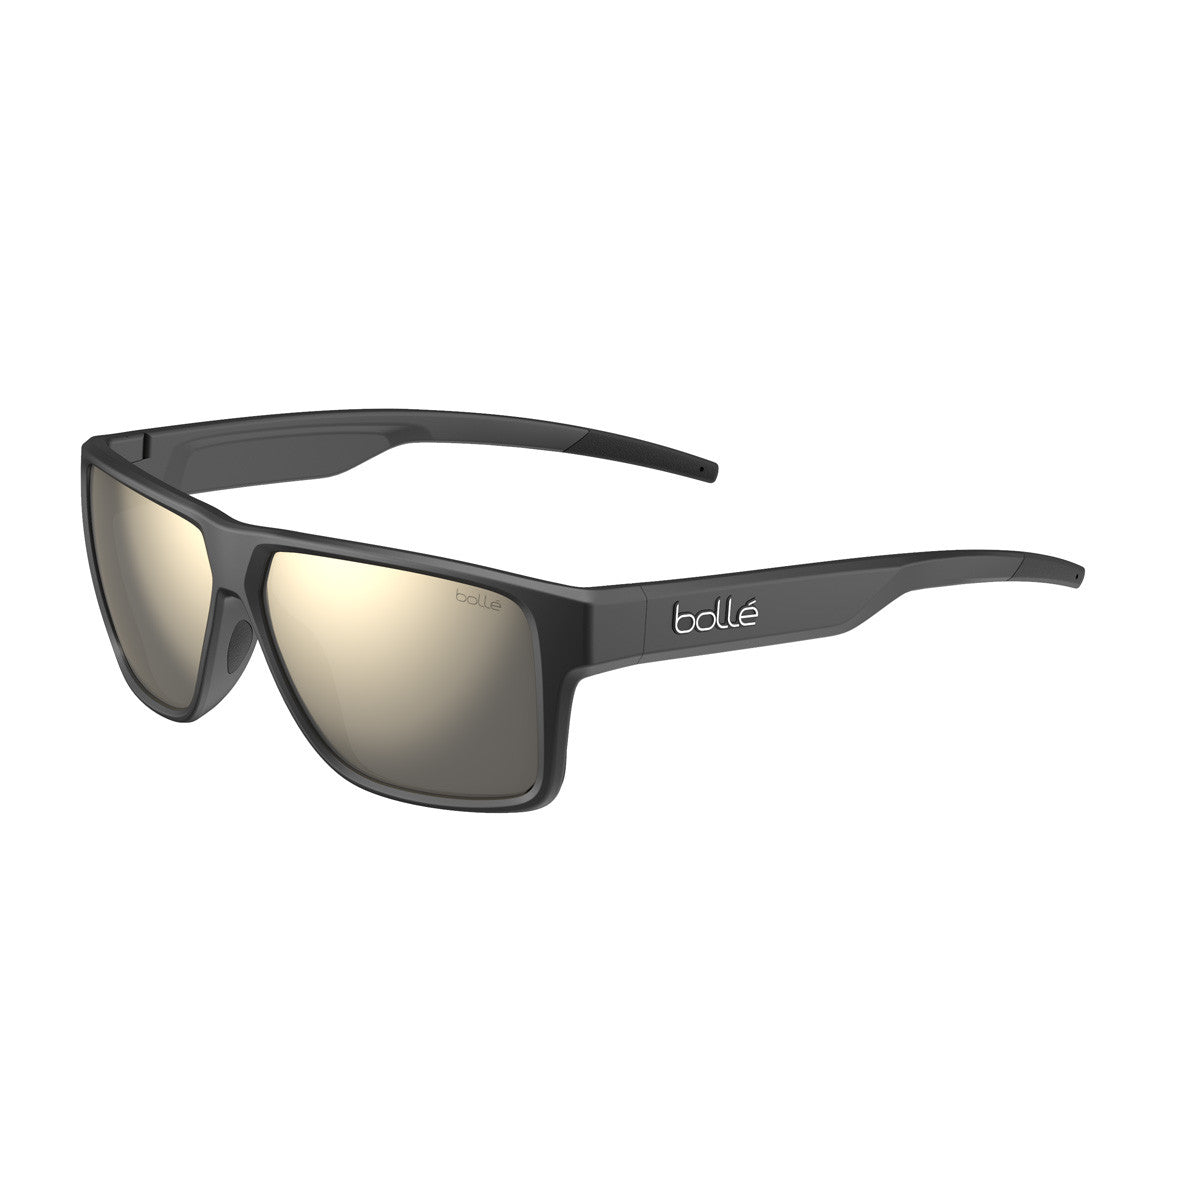 Bolle Temper Sunglasses  Black Matte Medium-Large